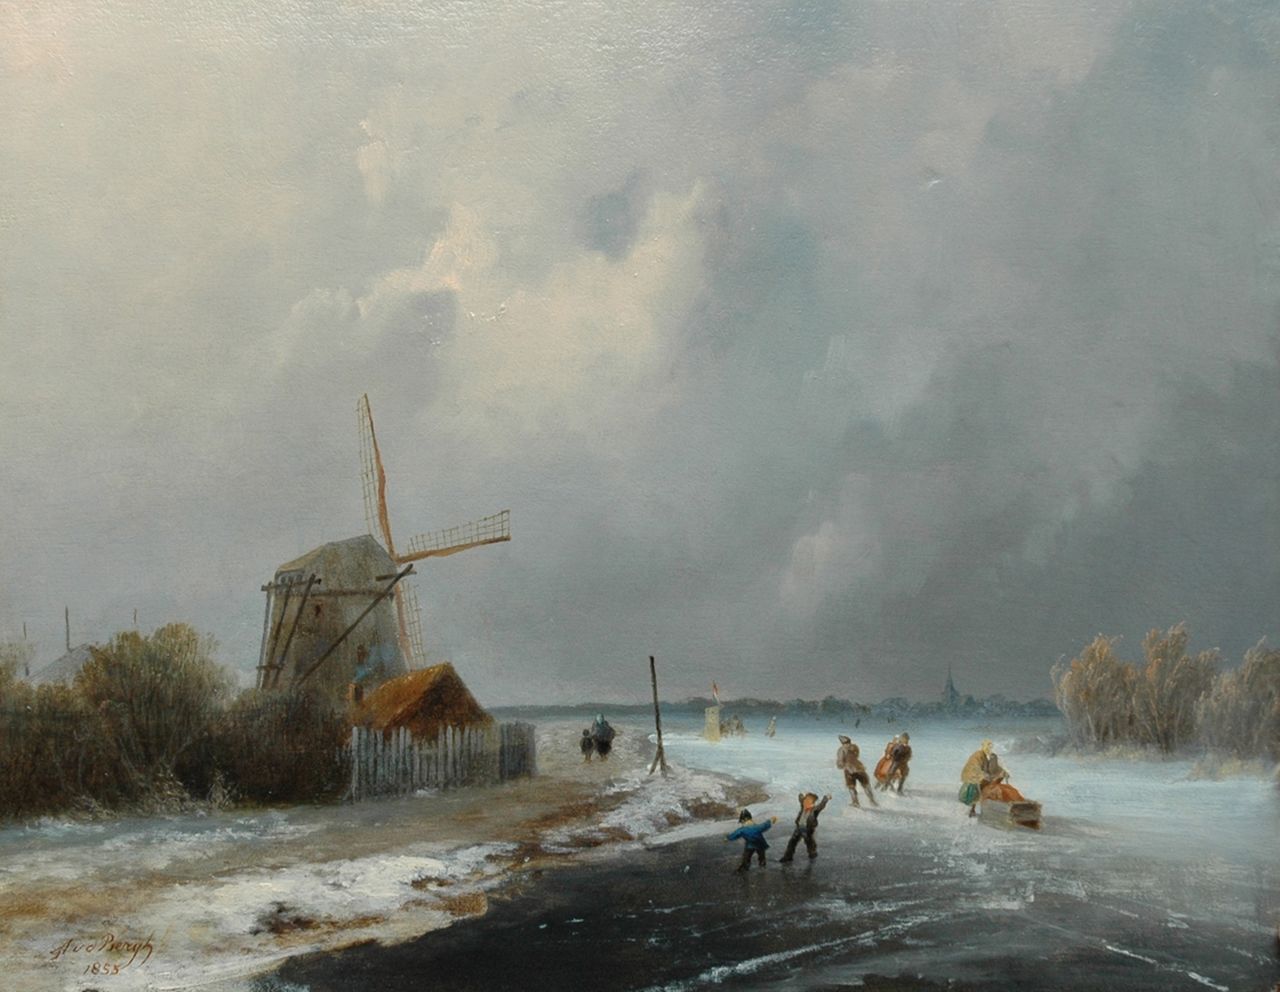 Bergh A. van den | Andries van den Bergh, IJspret bij een molen, olieverf op paneel 30,4 x 38,6 cm, gesigneerd linksonder en gedateerd 1855